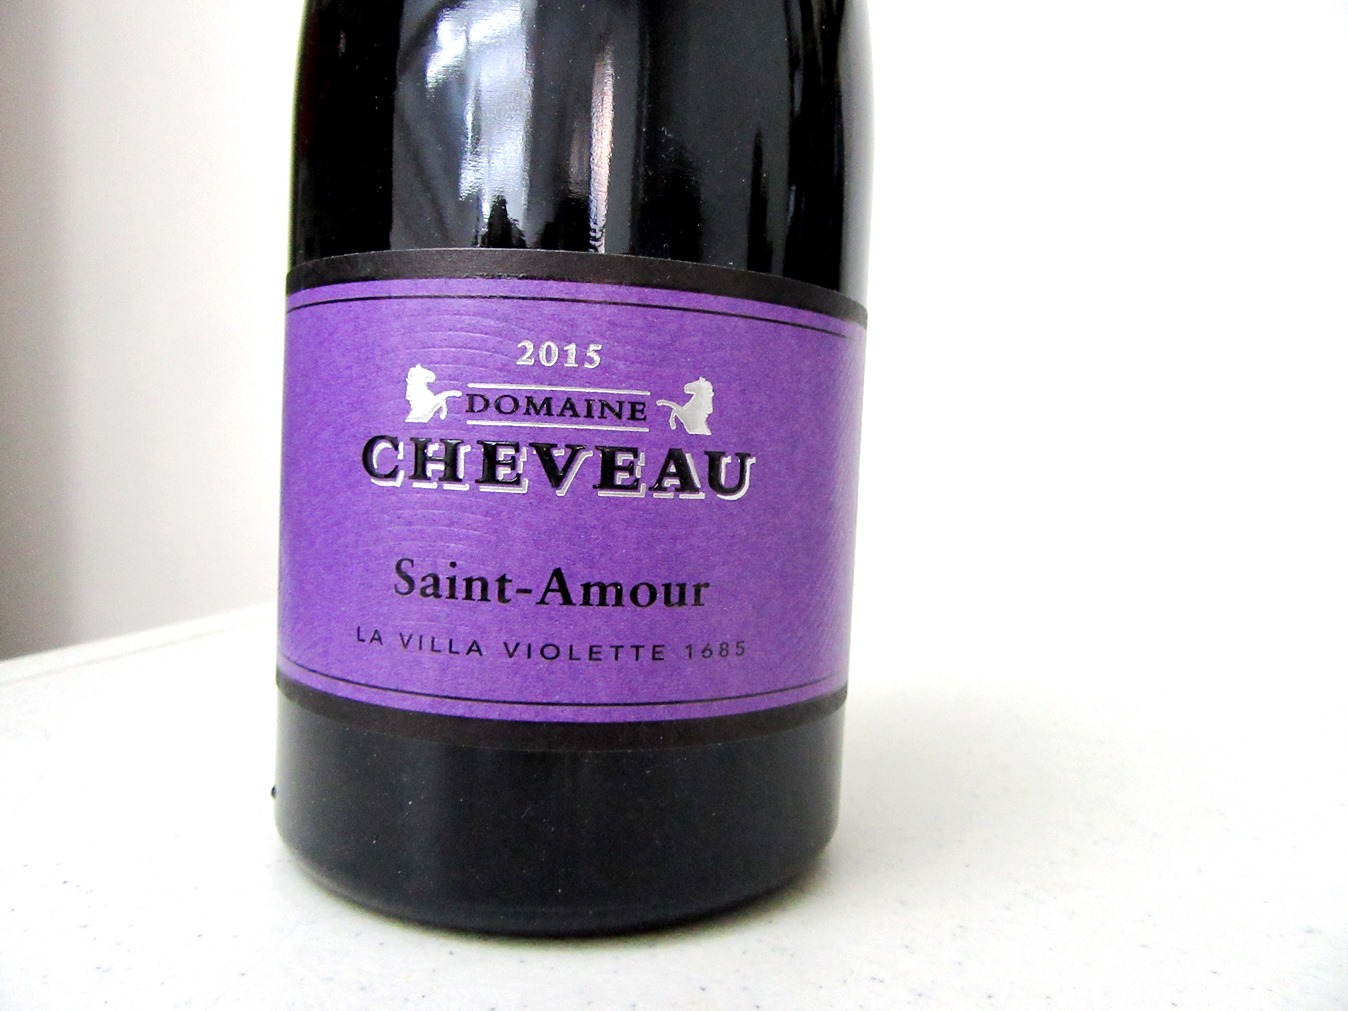 Domaine Cheveau, La Villa Violette 1685 Saint-Amour 2015, Beaujolais, France, Wine Casual